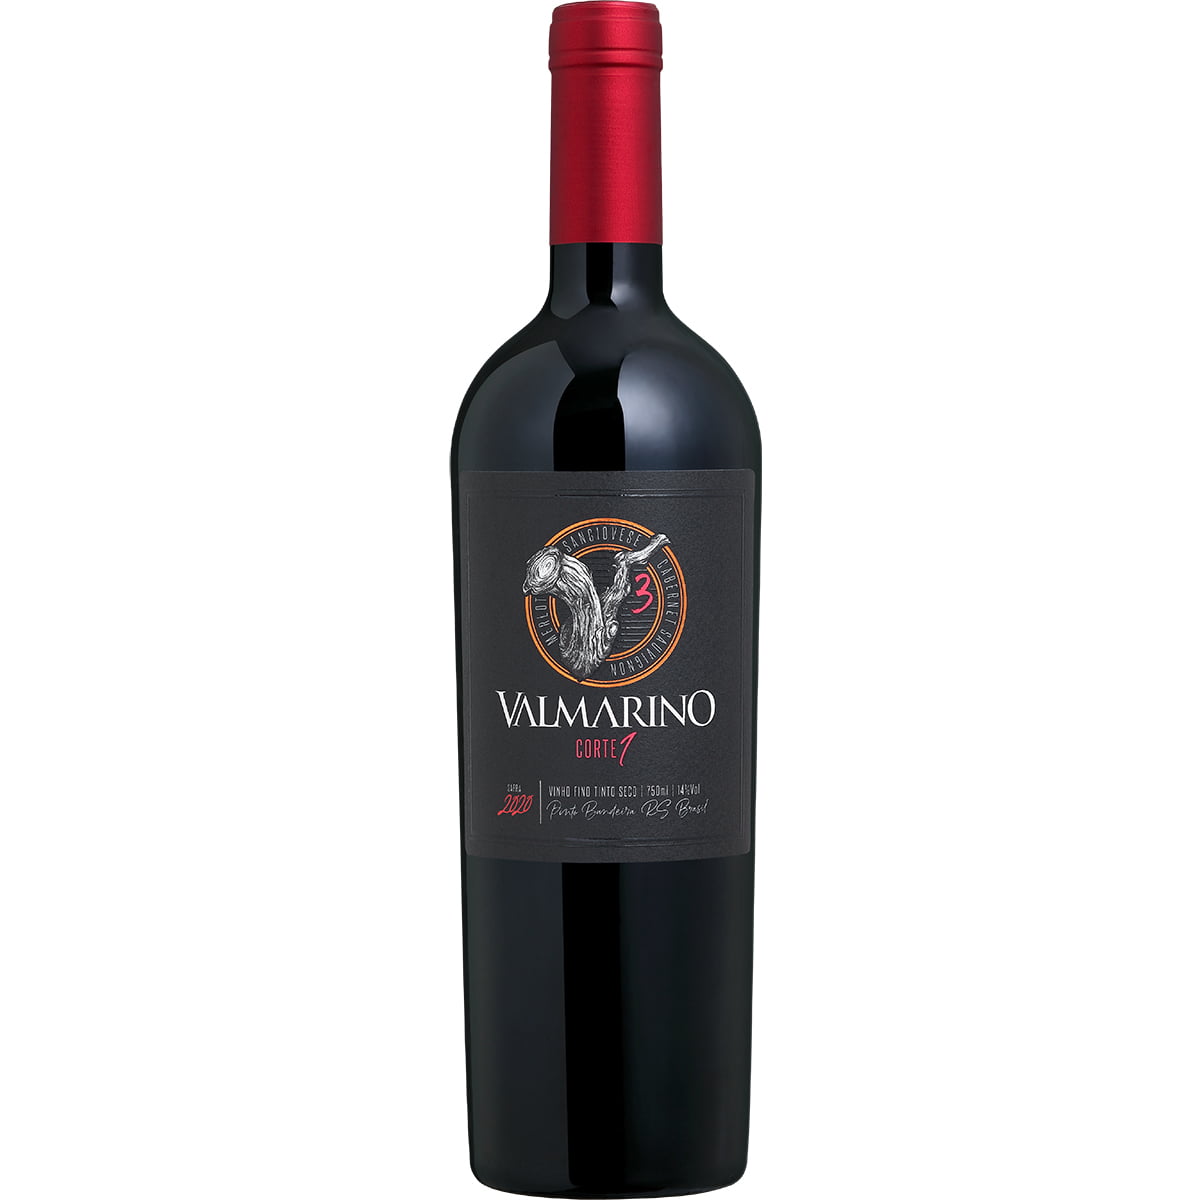 Vinho Valmarino V3 Corte 1 Safra 2020 Tinto Seco 750ml